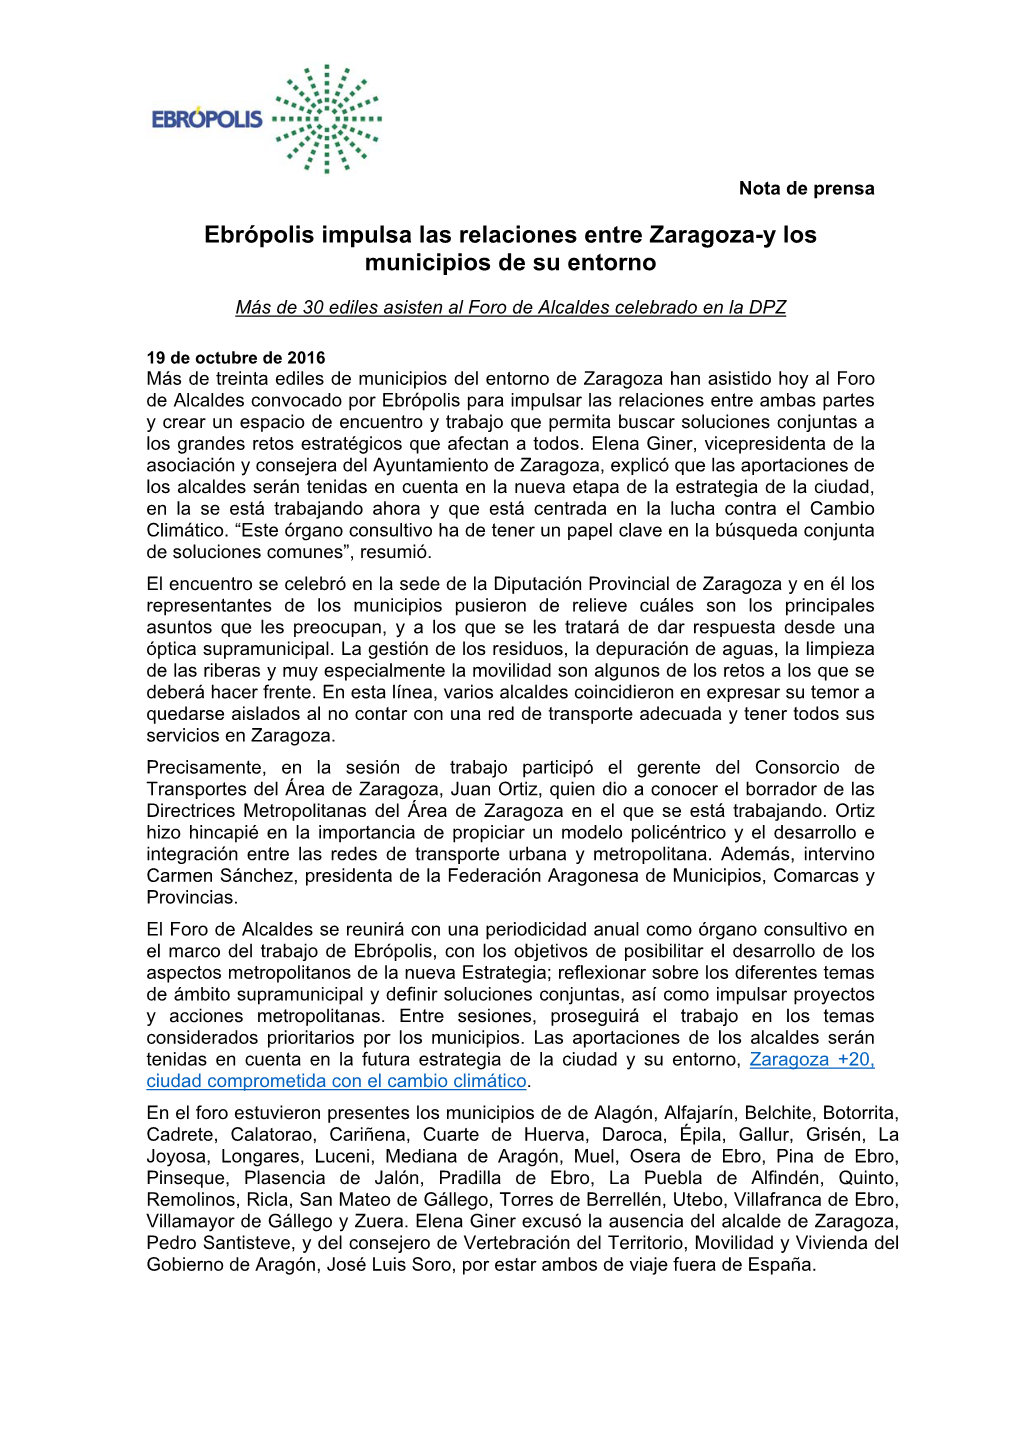 Ebrópolis Impulsa Las Relaciones Entre Zaragoza-Y Los Municipios De Su Entorno